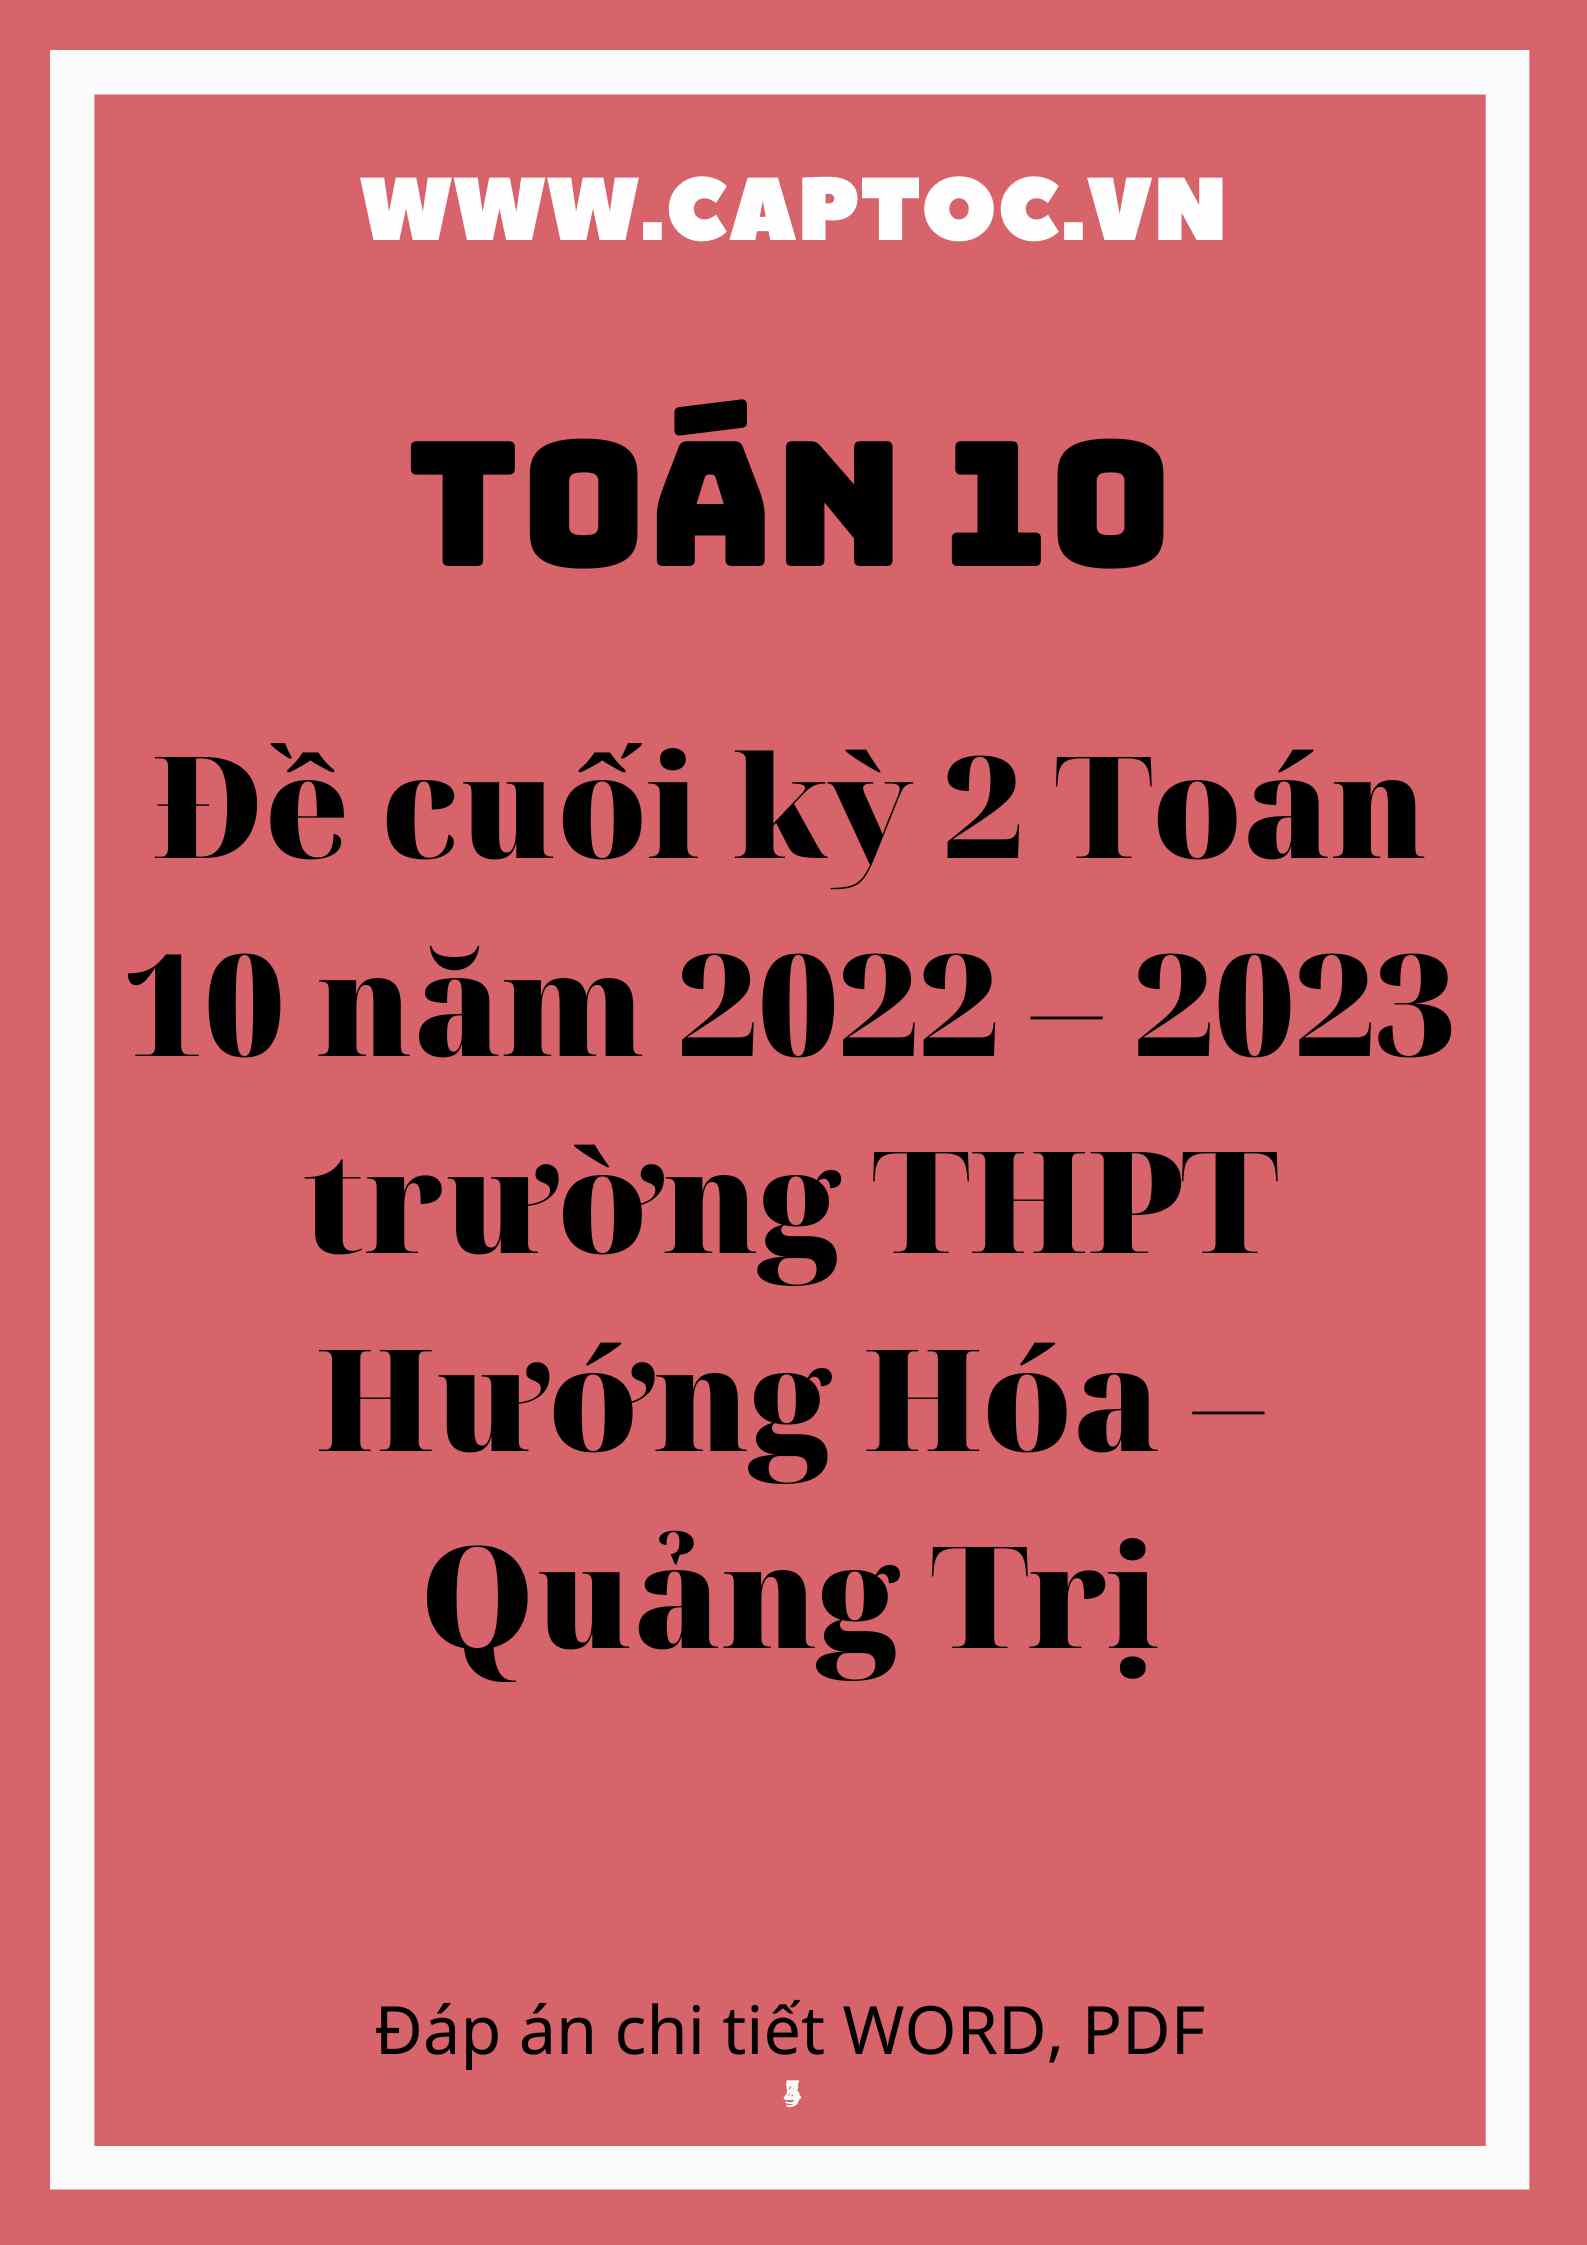 Đề cuối kỳ 2 Toán 10 năm 2022 – 2023 trường THPT Hướng Hóa – Quảng Trị